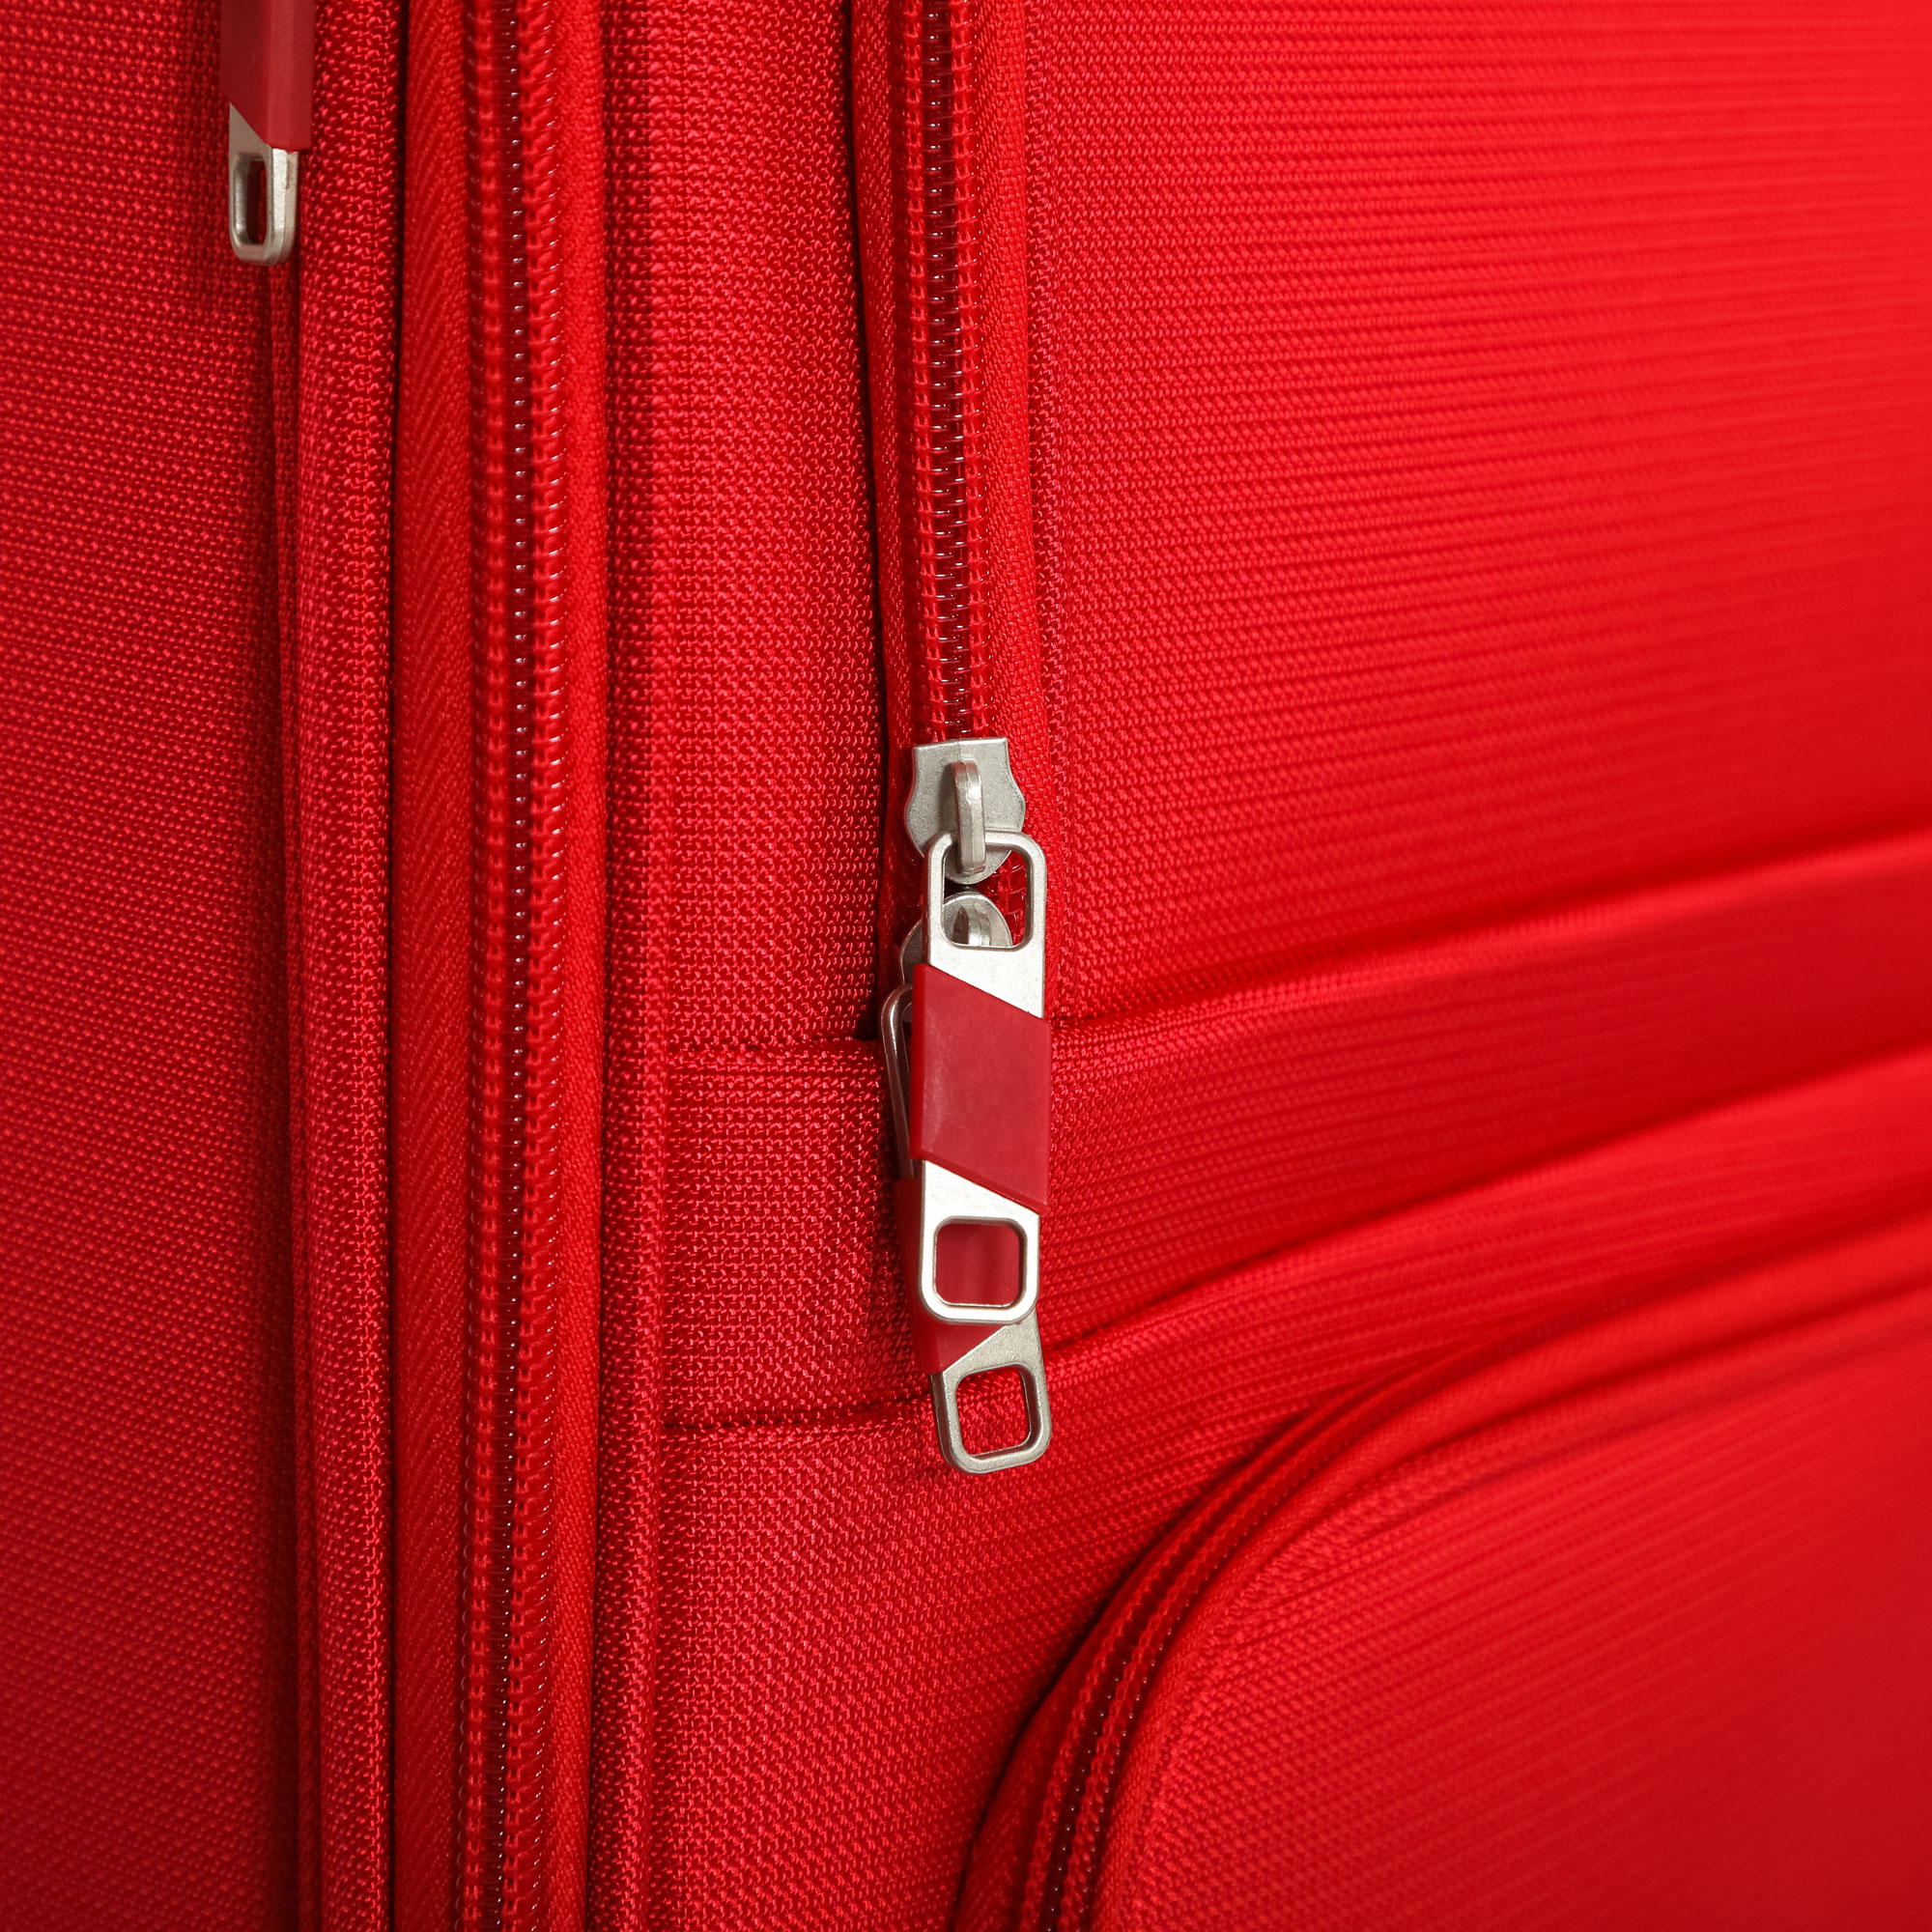 Чемодан красный Travelink ультралегкий S 36x22x55 см, размер S - фото 13